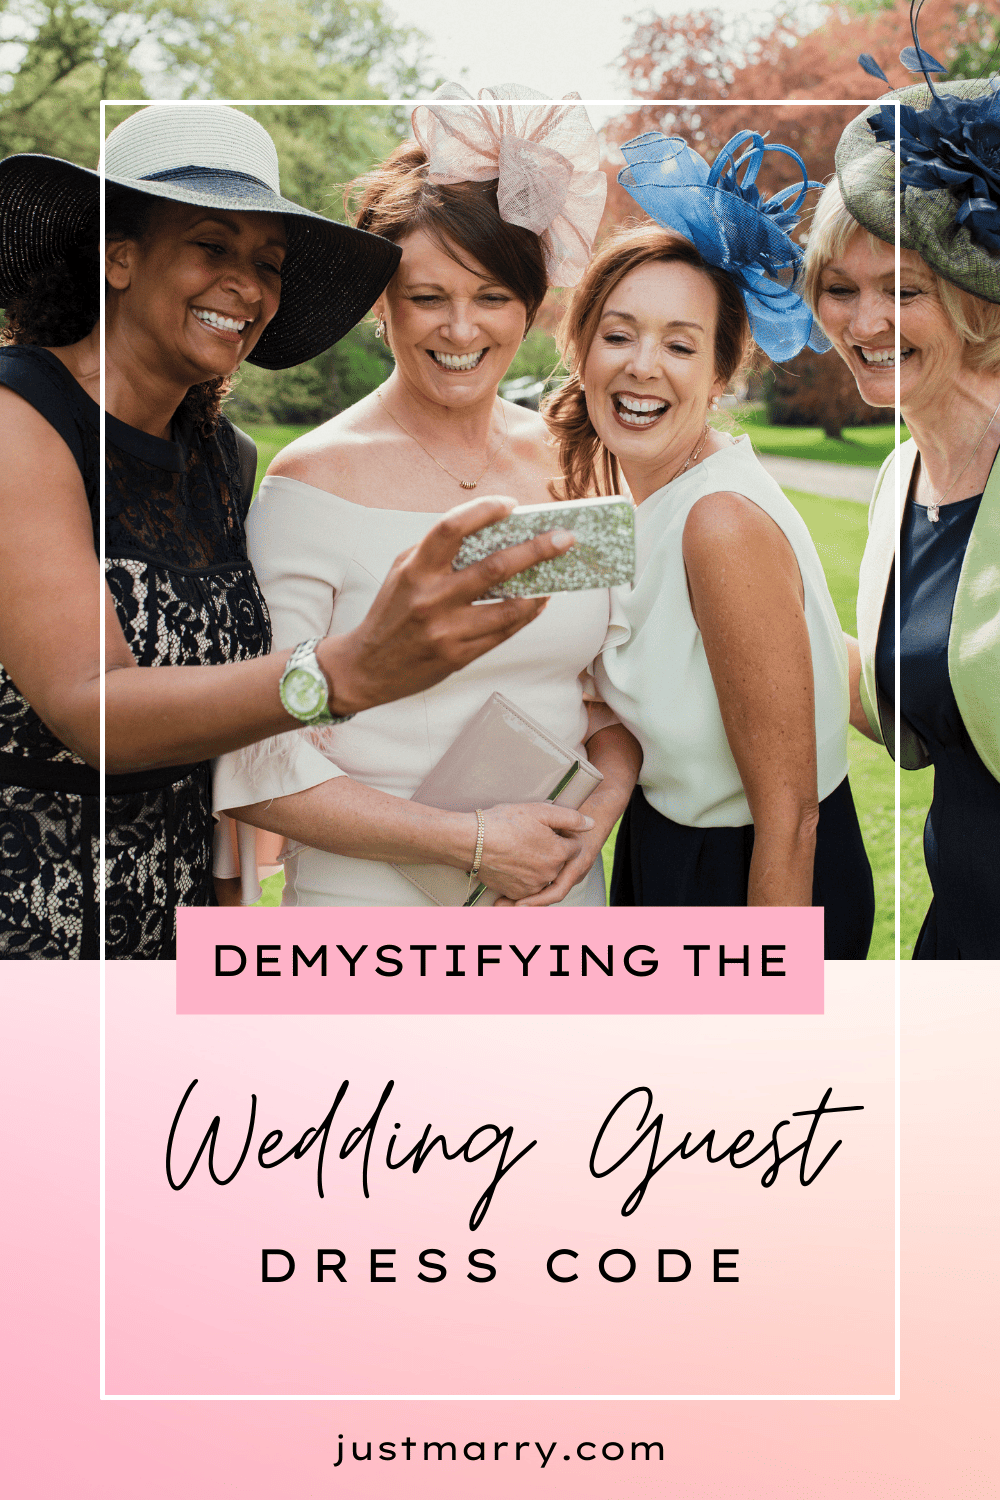 Wedding Guest Dress Code - Just Marry Weddings - Pinterest Pin